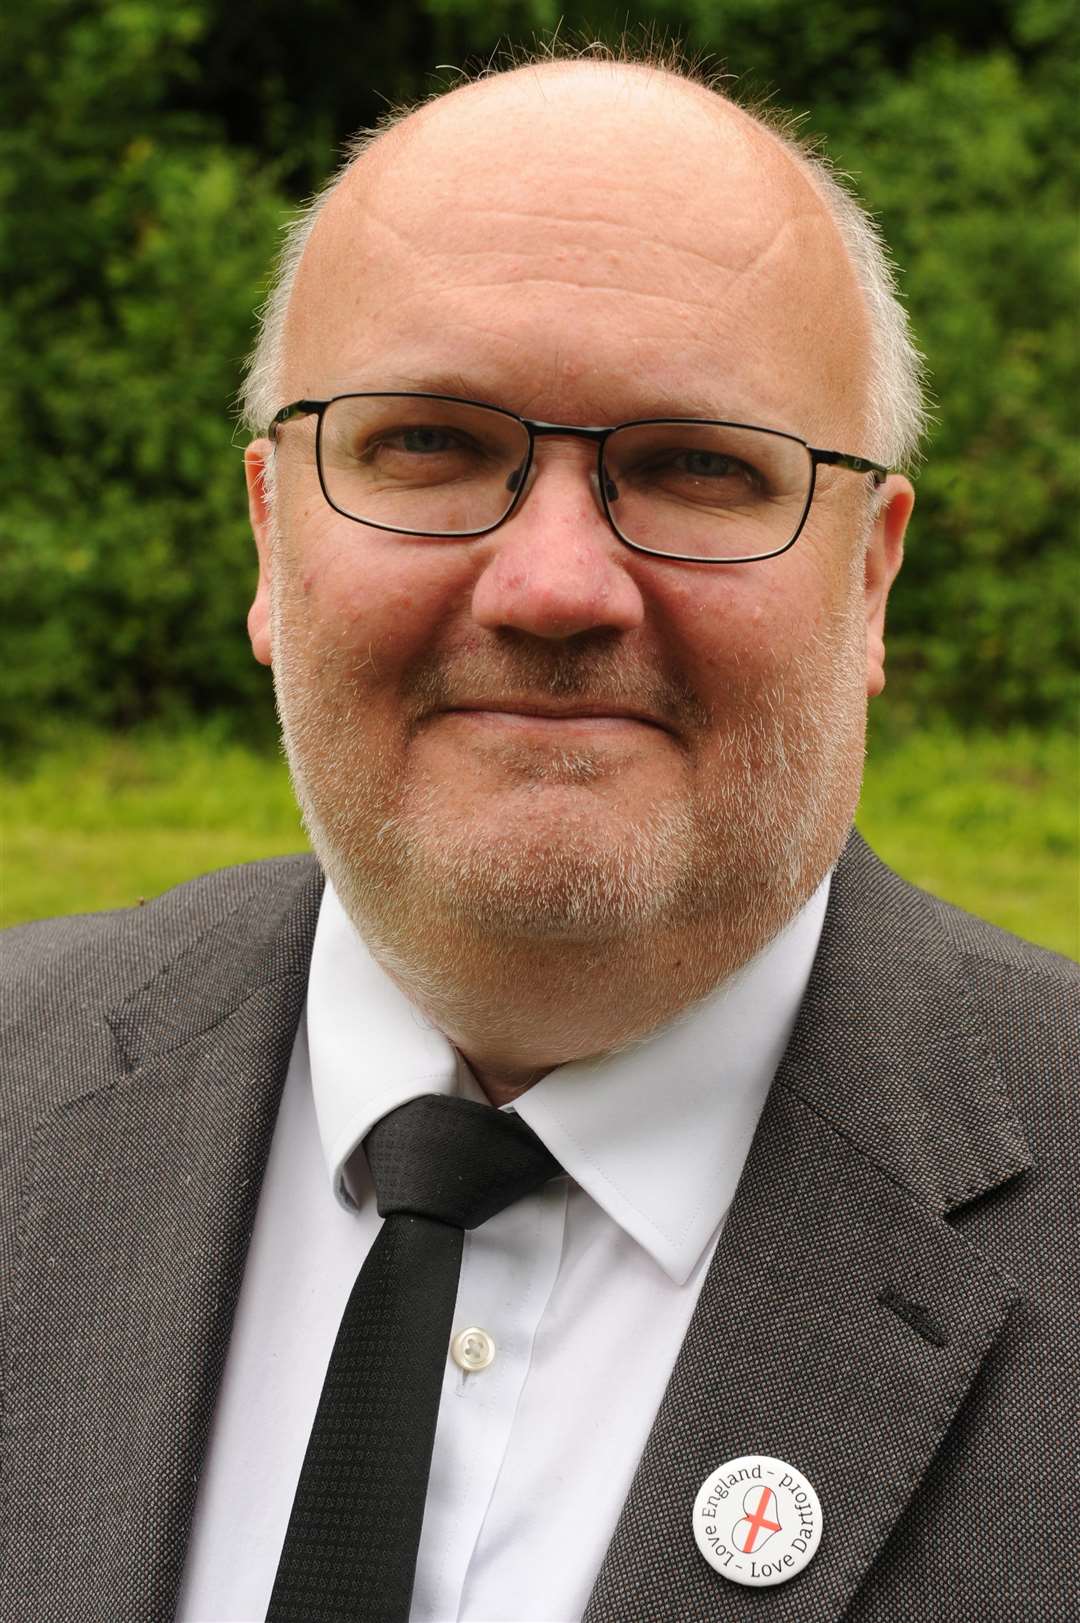 Dartford council leader Cllr Jeremy Kite